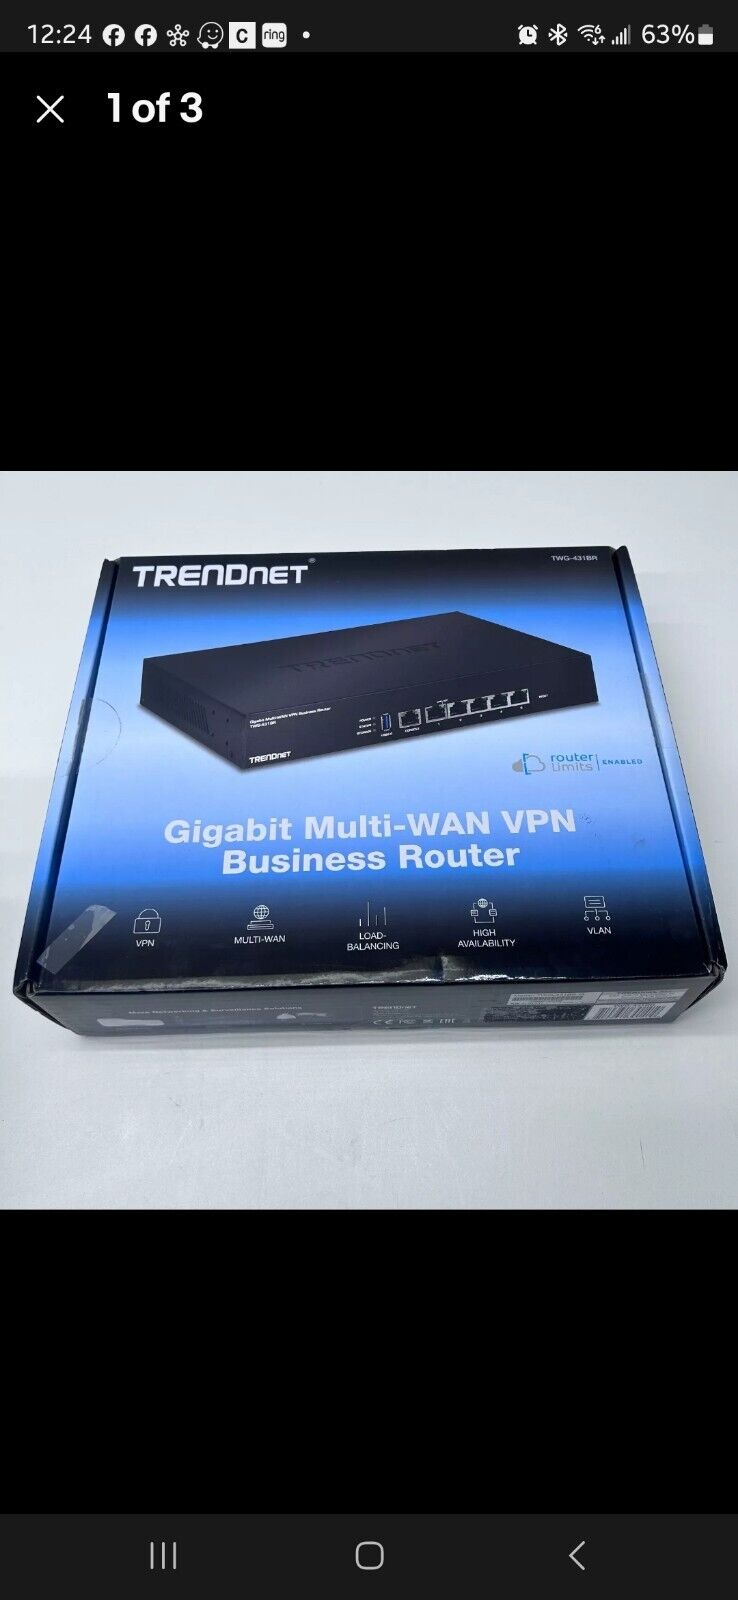 VPN Business Router - TRENDnet Gigabit Multi-Wan  Model TWG-431BR